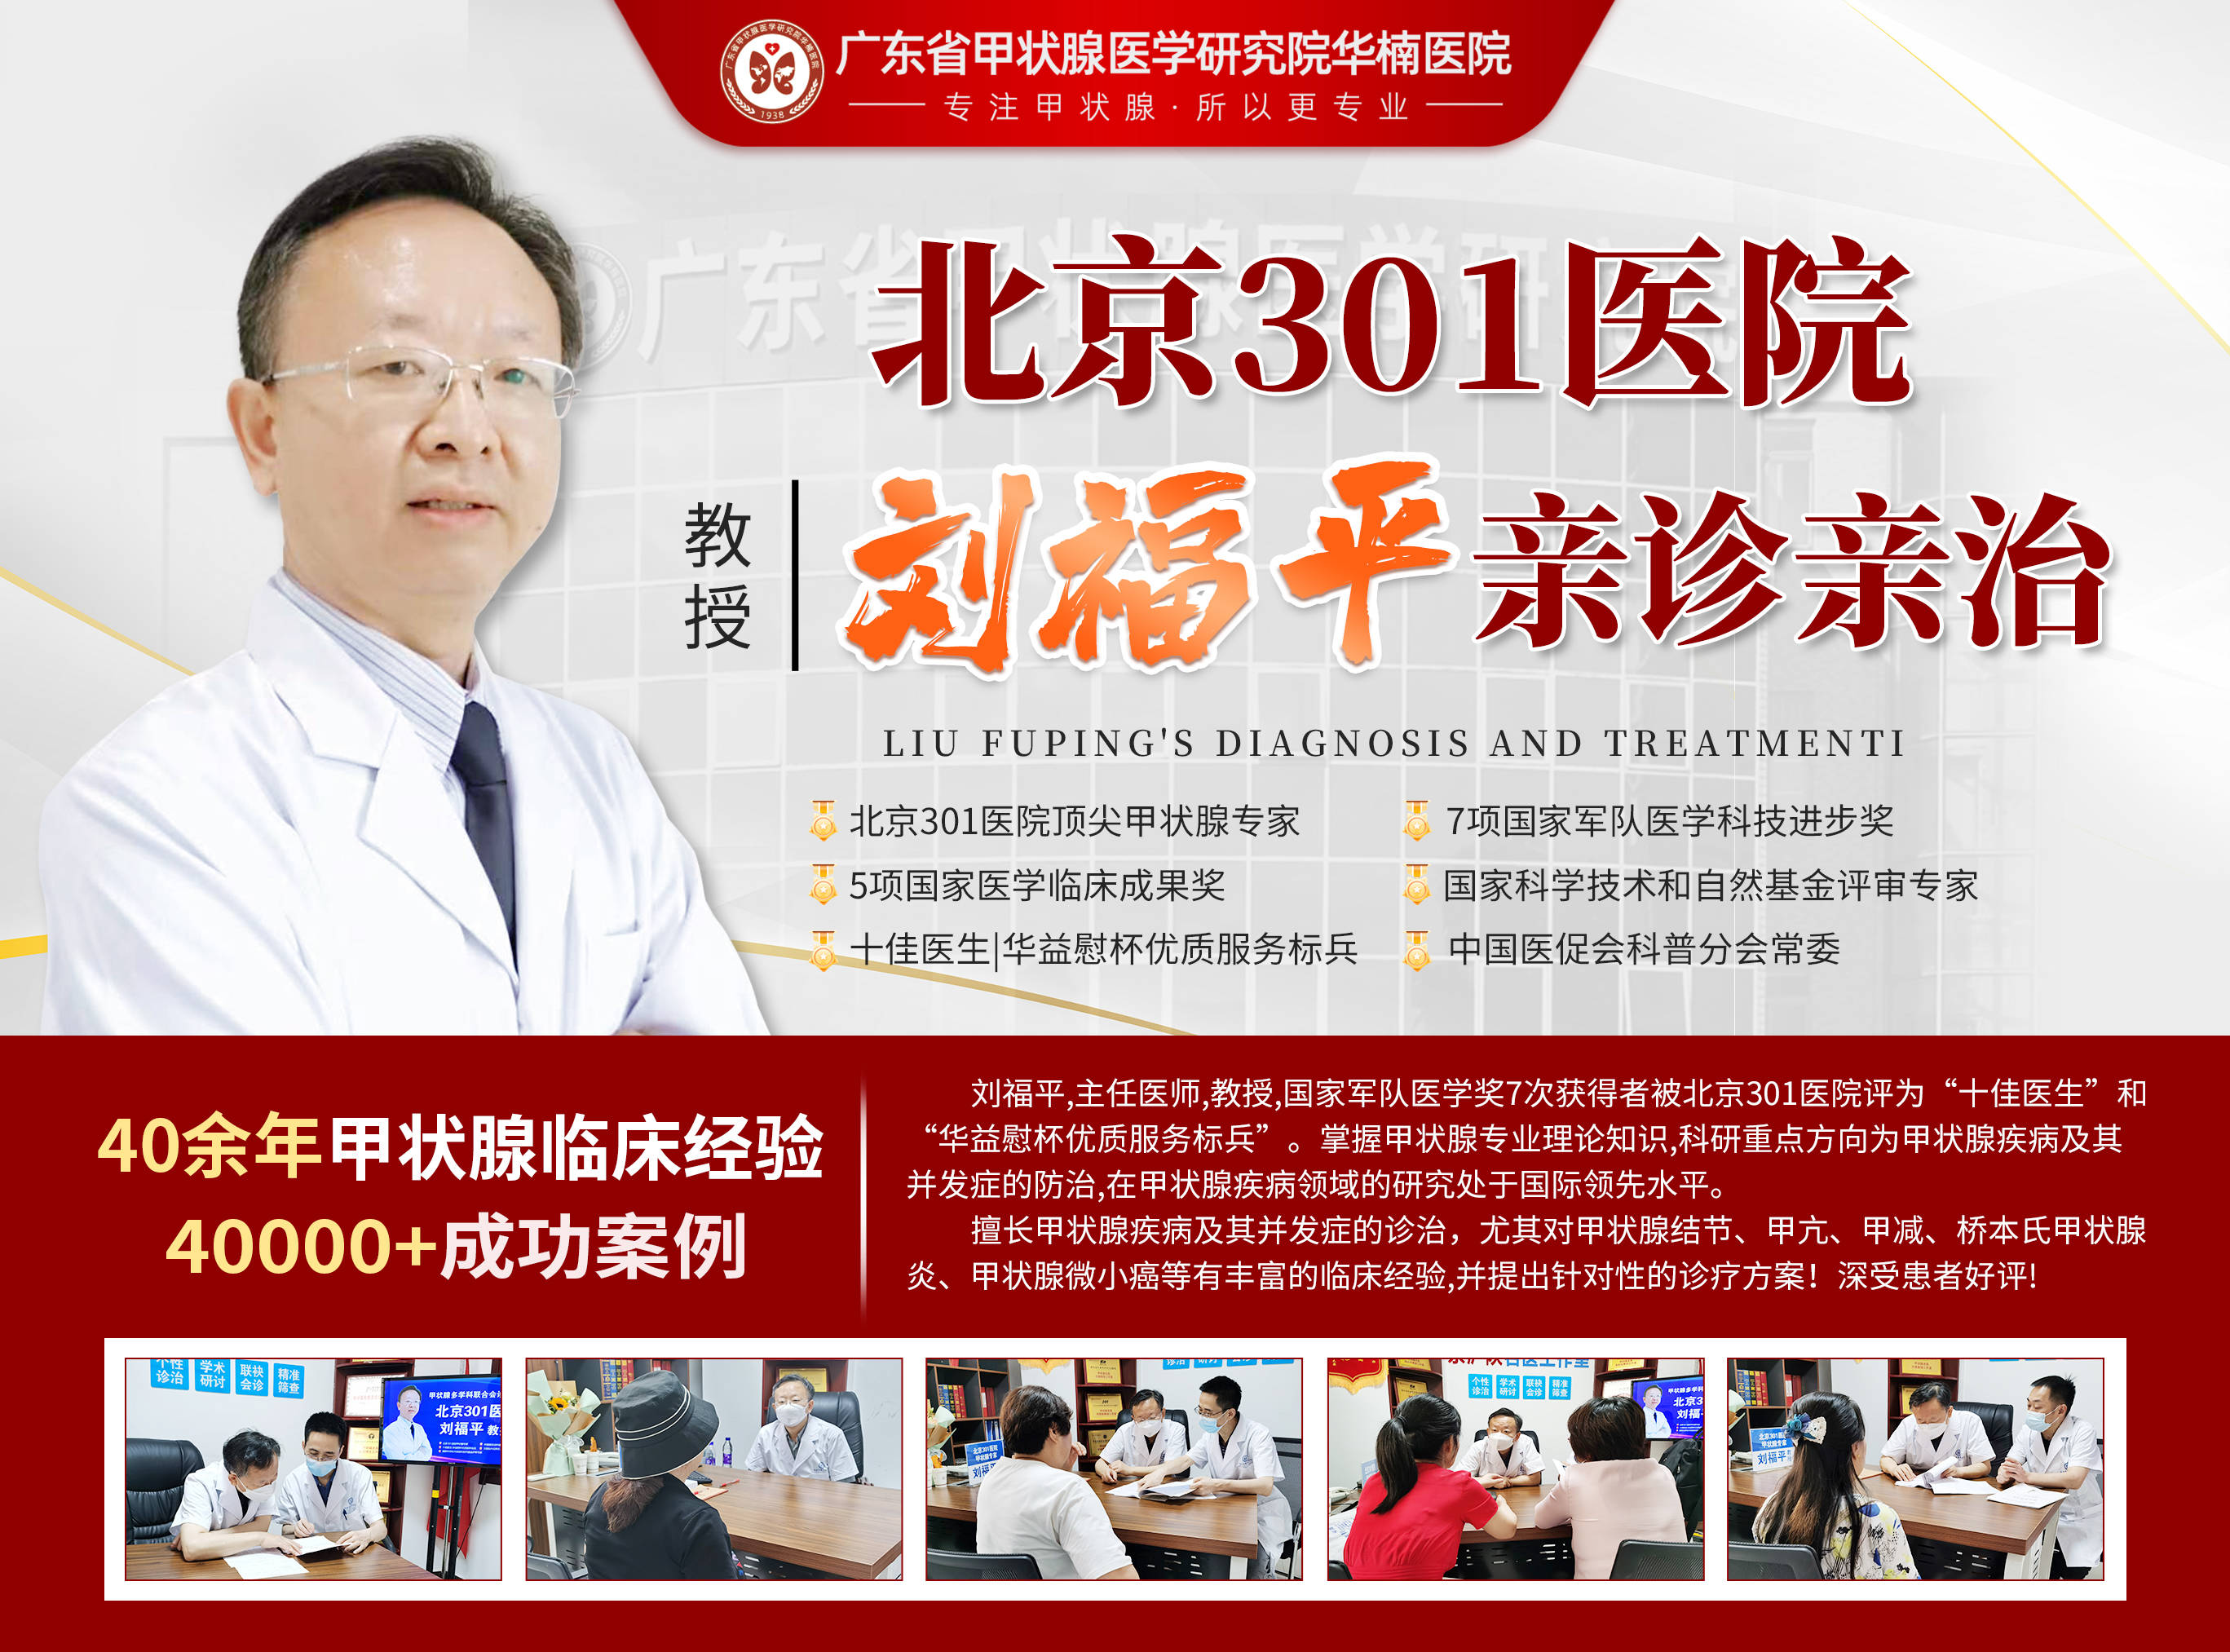 【重磅信息】本周末北京301医院甲状腺专家刘福平助力广东华楠医院联合会诊！